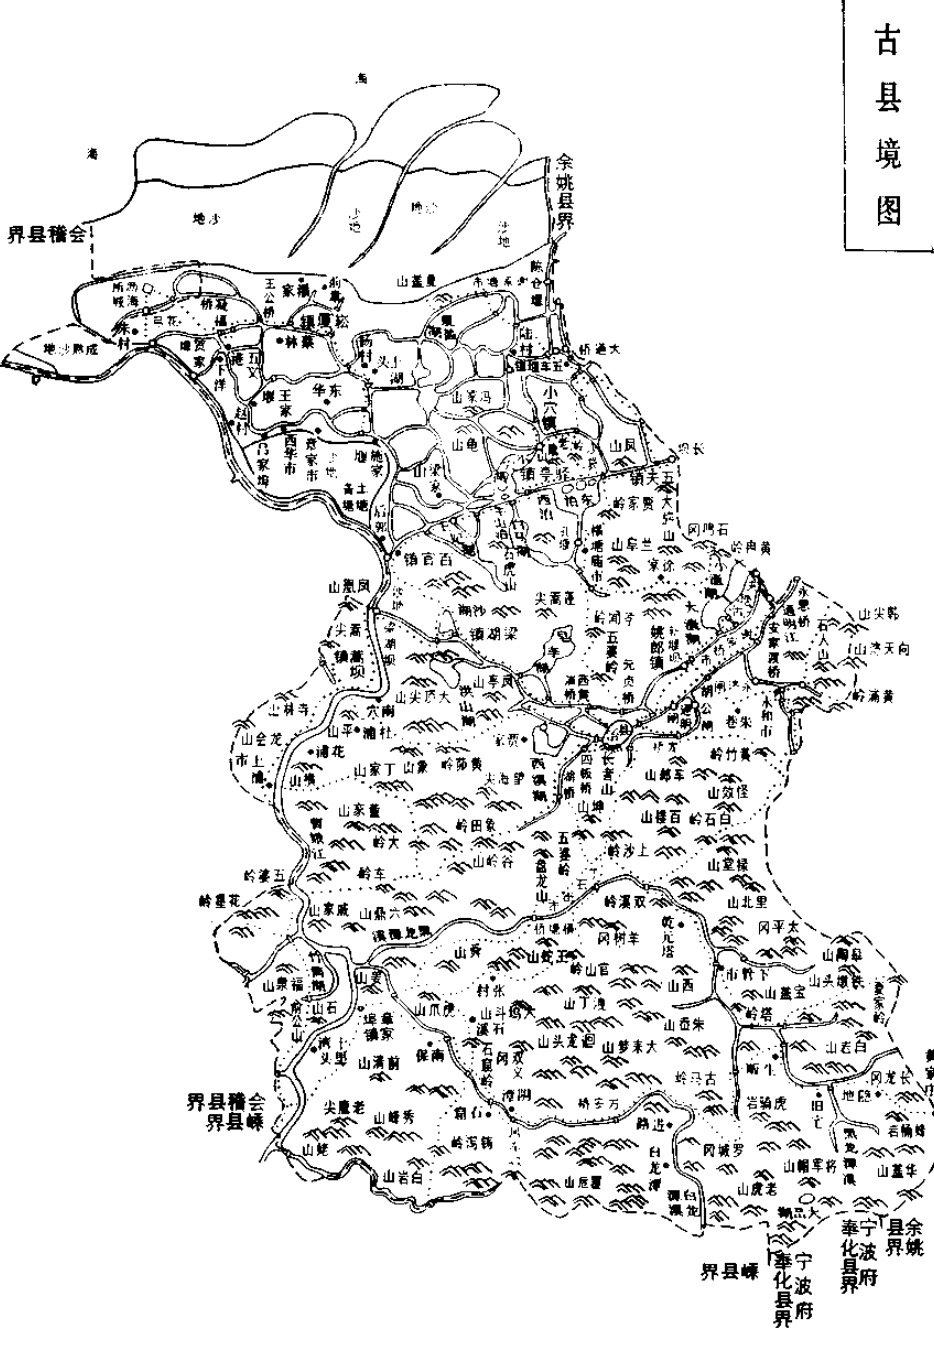 古县境图.jpg